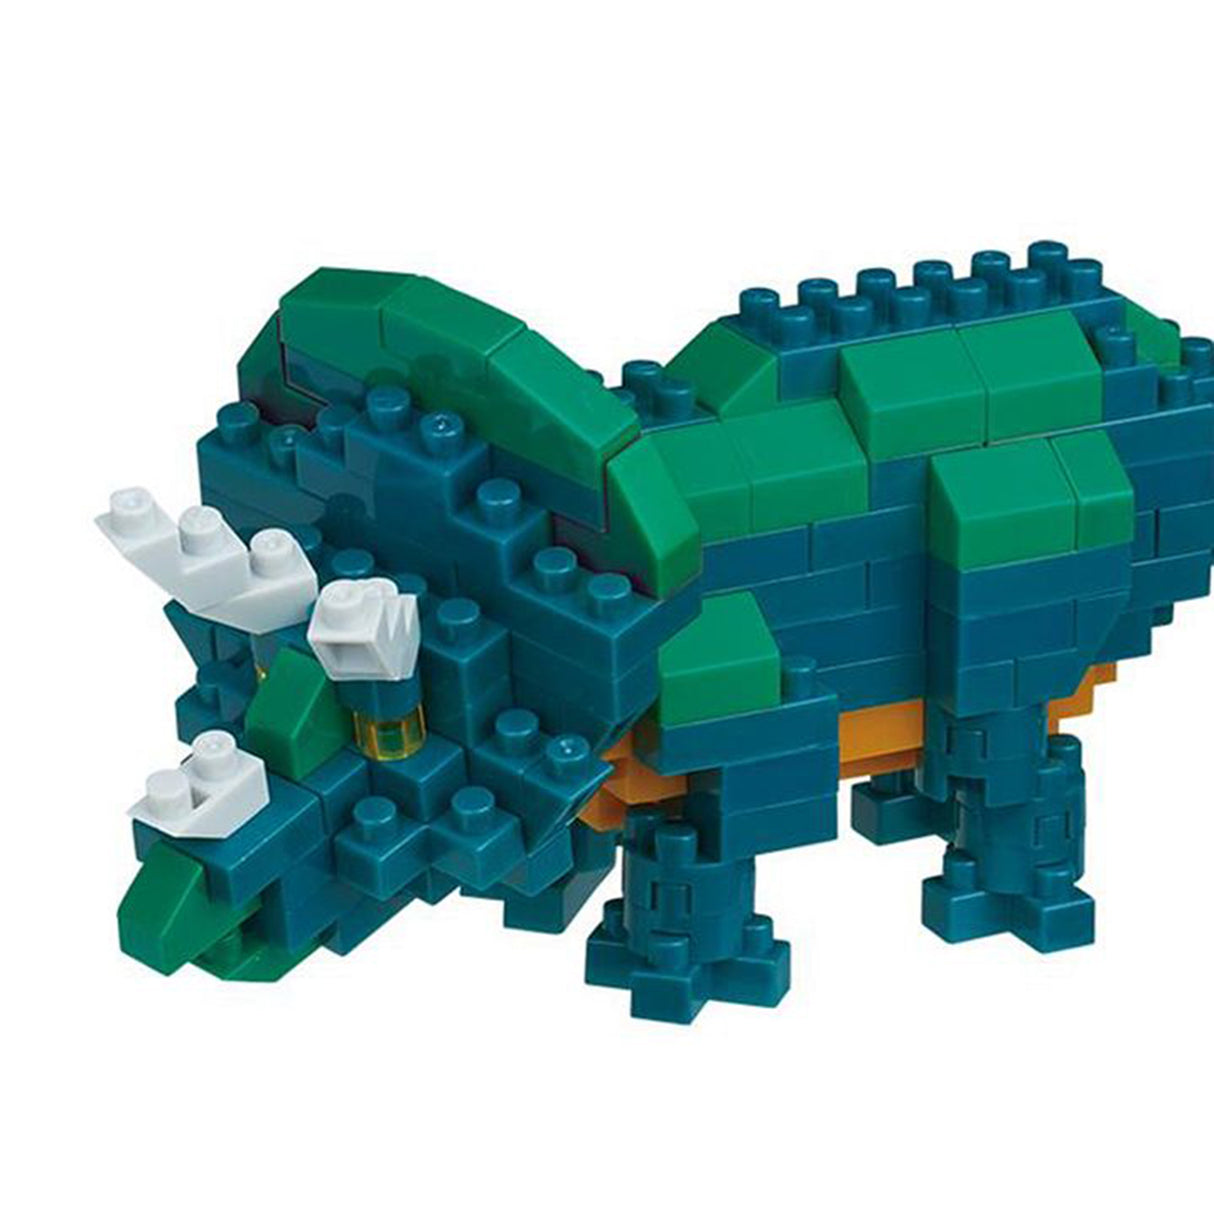 nanoblock - Triceratops (160 pieces)